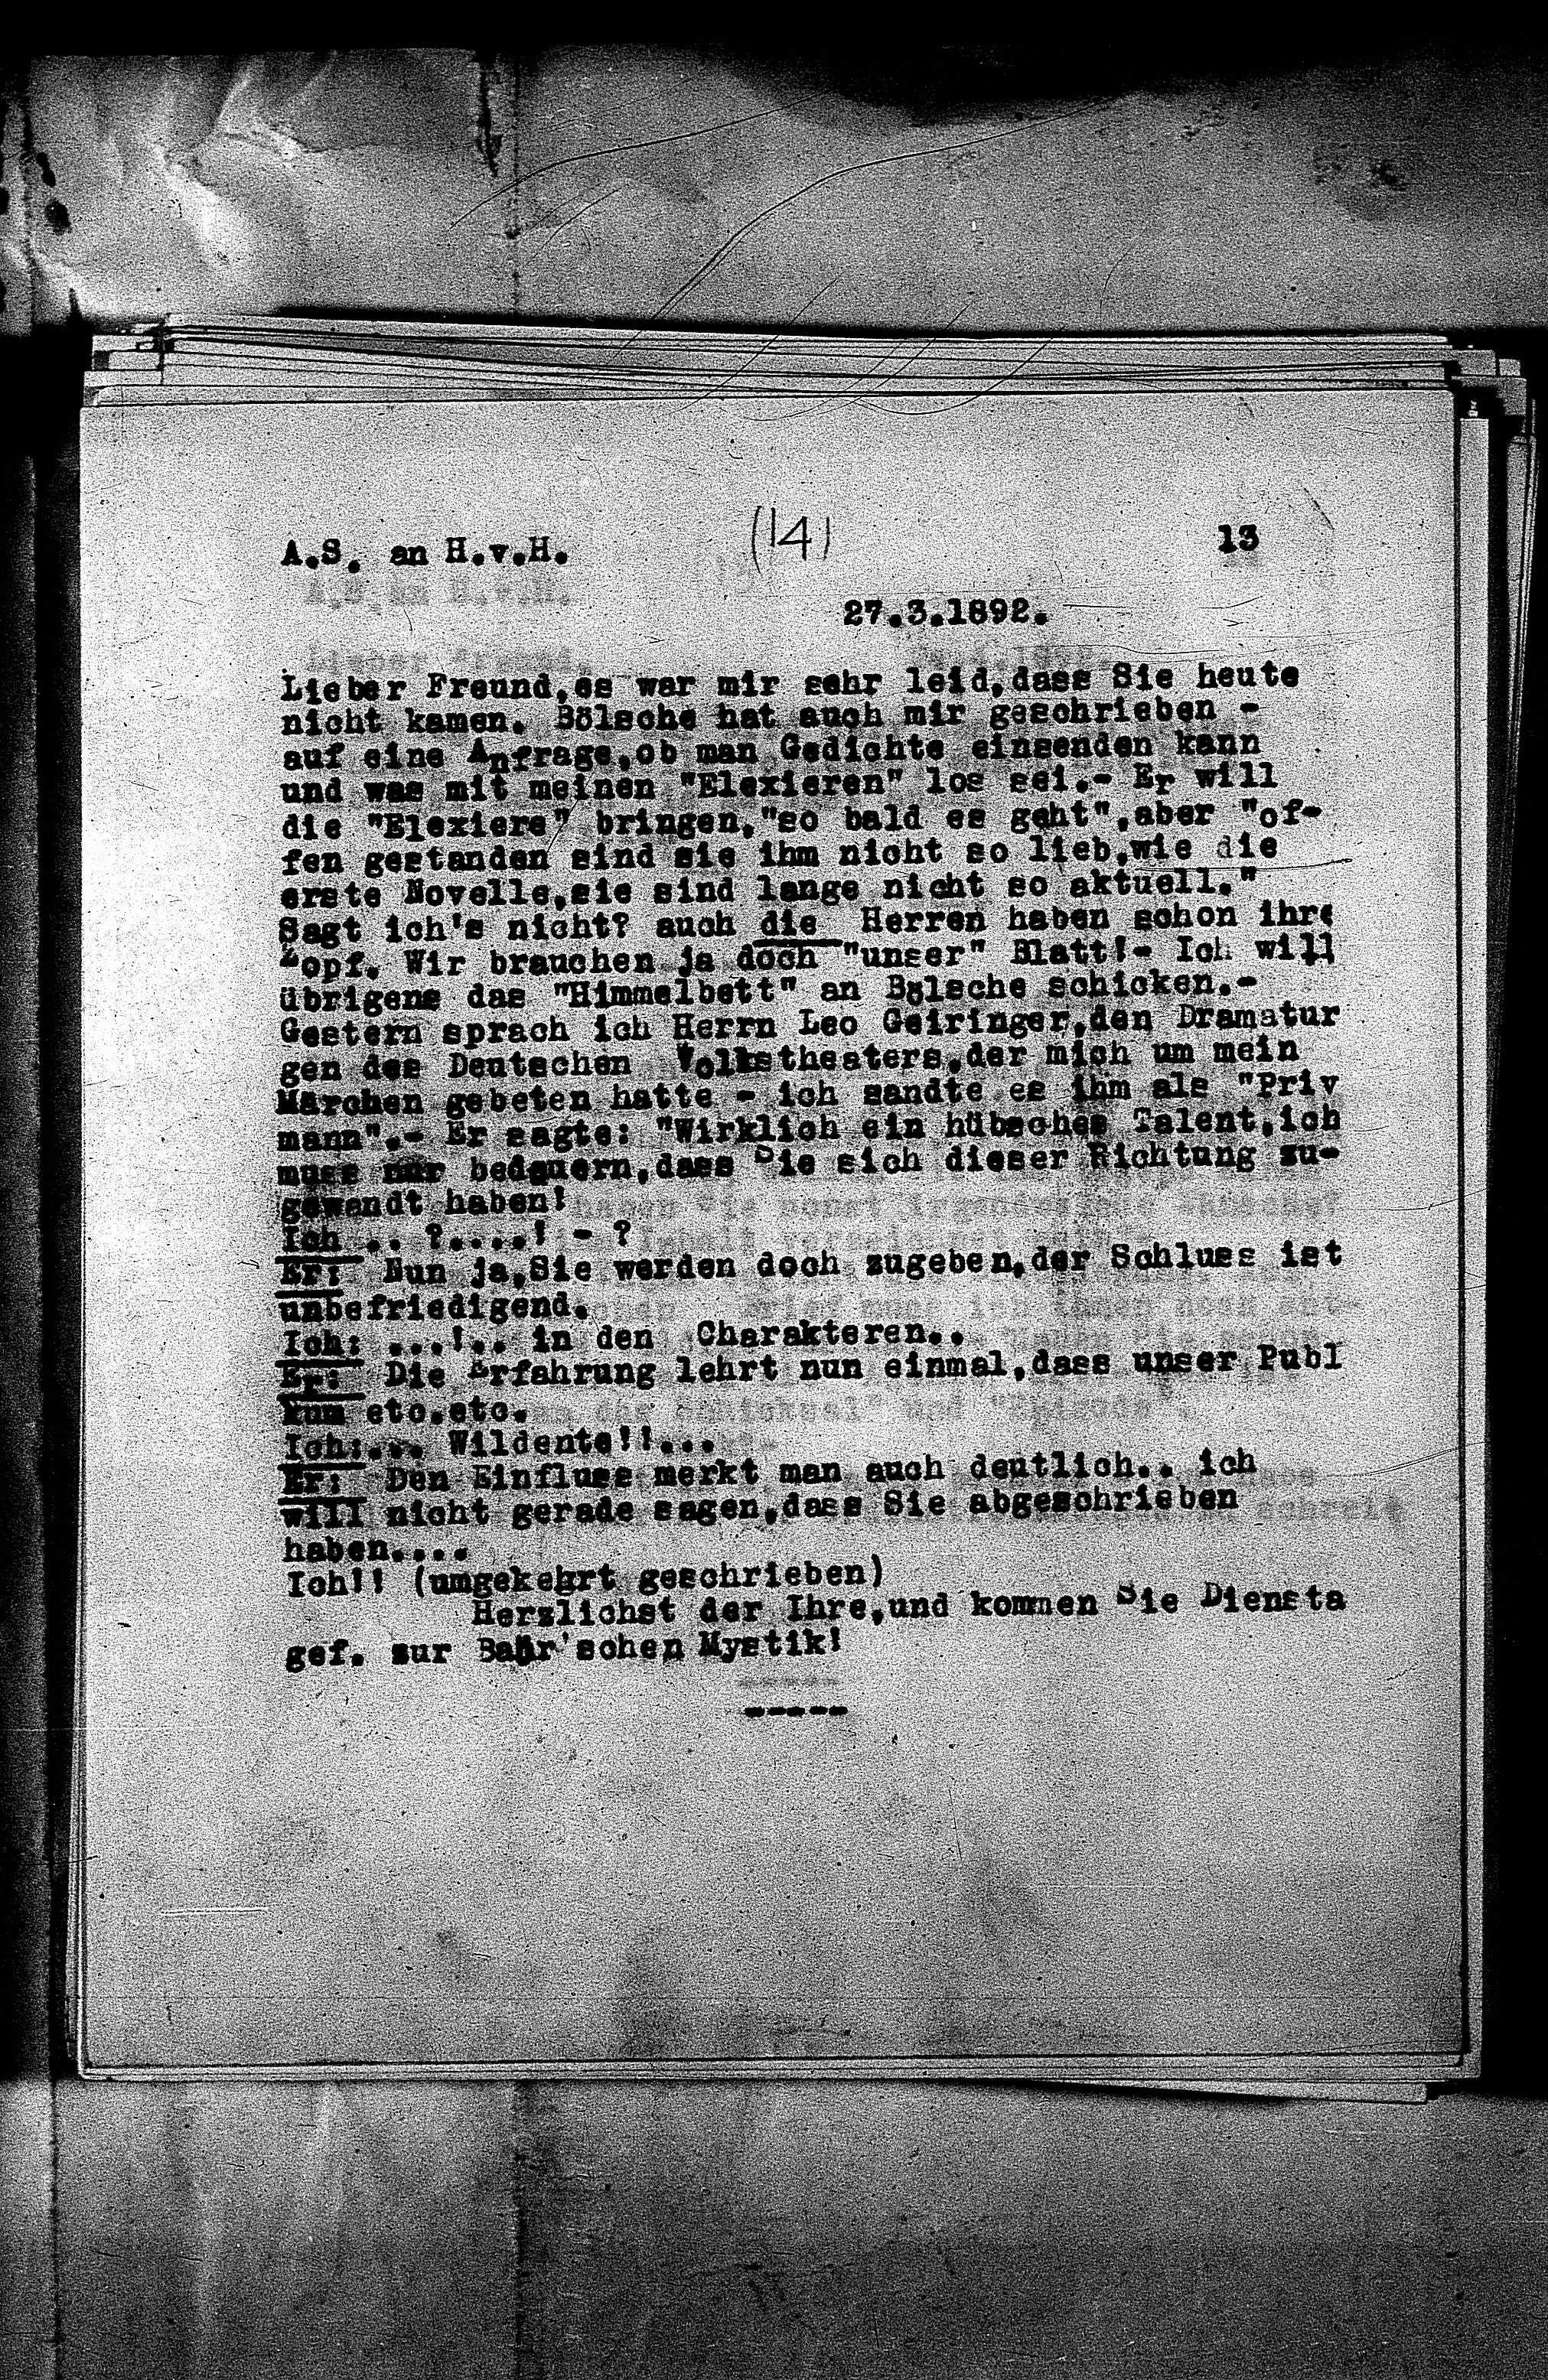 Vorschaubild für Hofmannsthal, Hugo von_AS an HvH Abschrift, HvH an AS, Originale (Mikrofilm 38), Seite 16